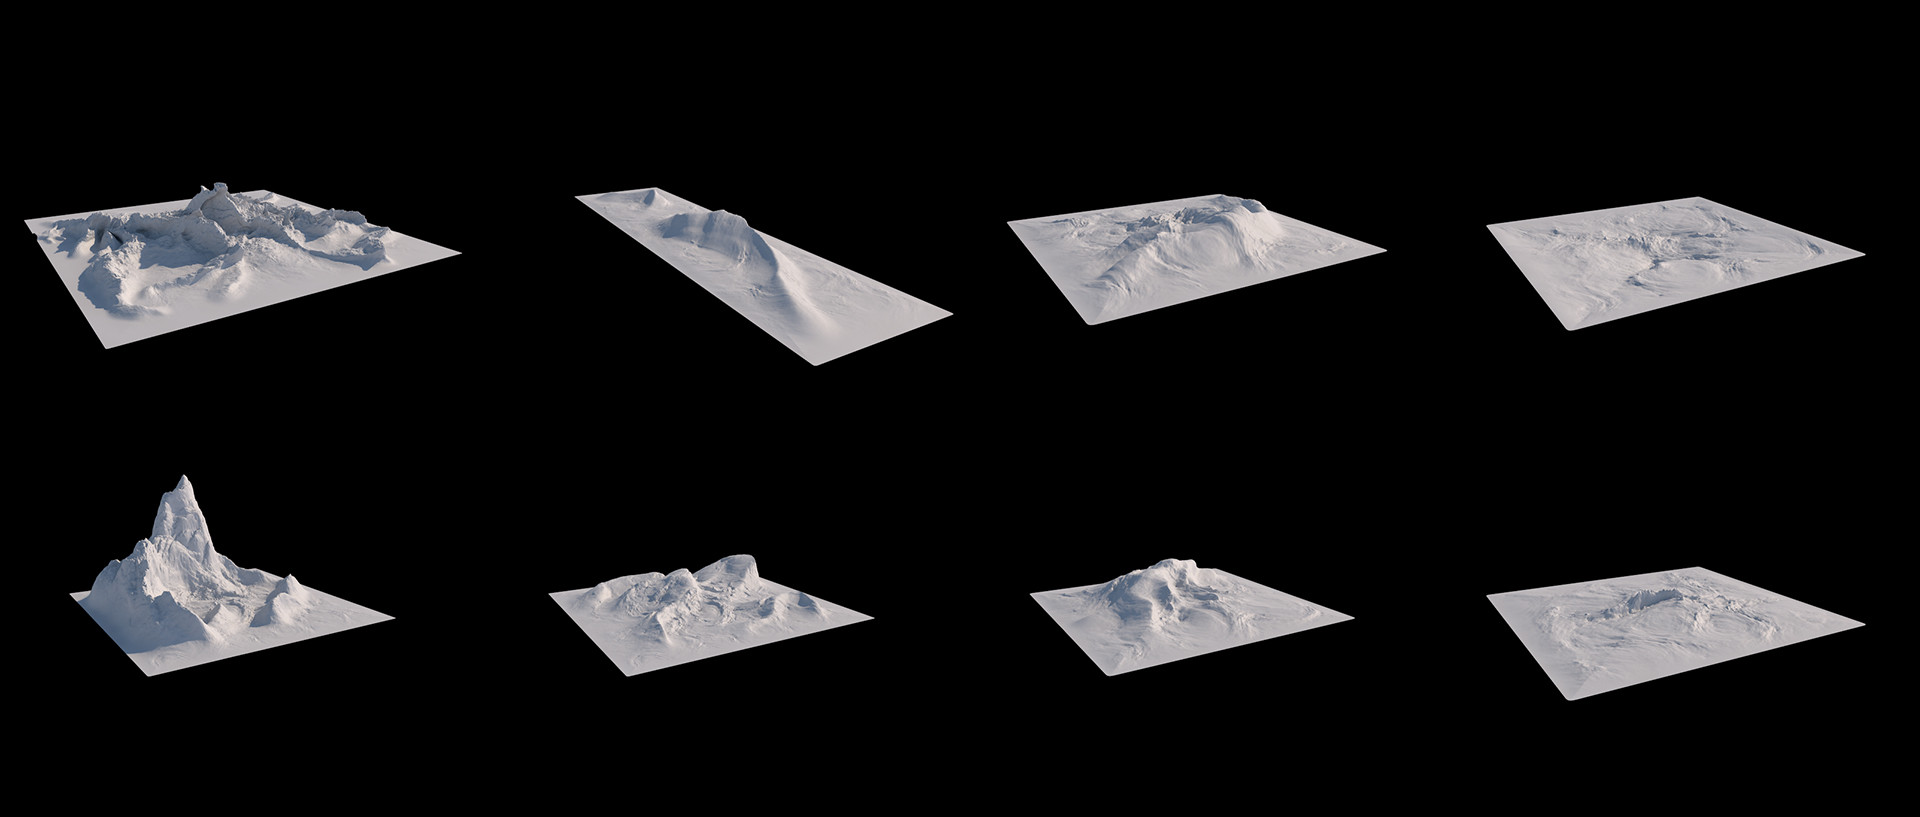 مدل سه بعدی کوه برای سینمافوردی - 6